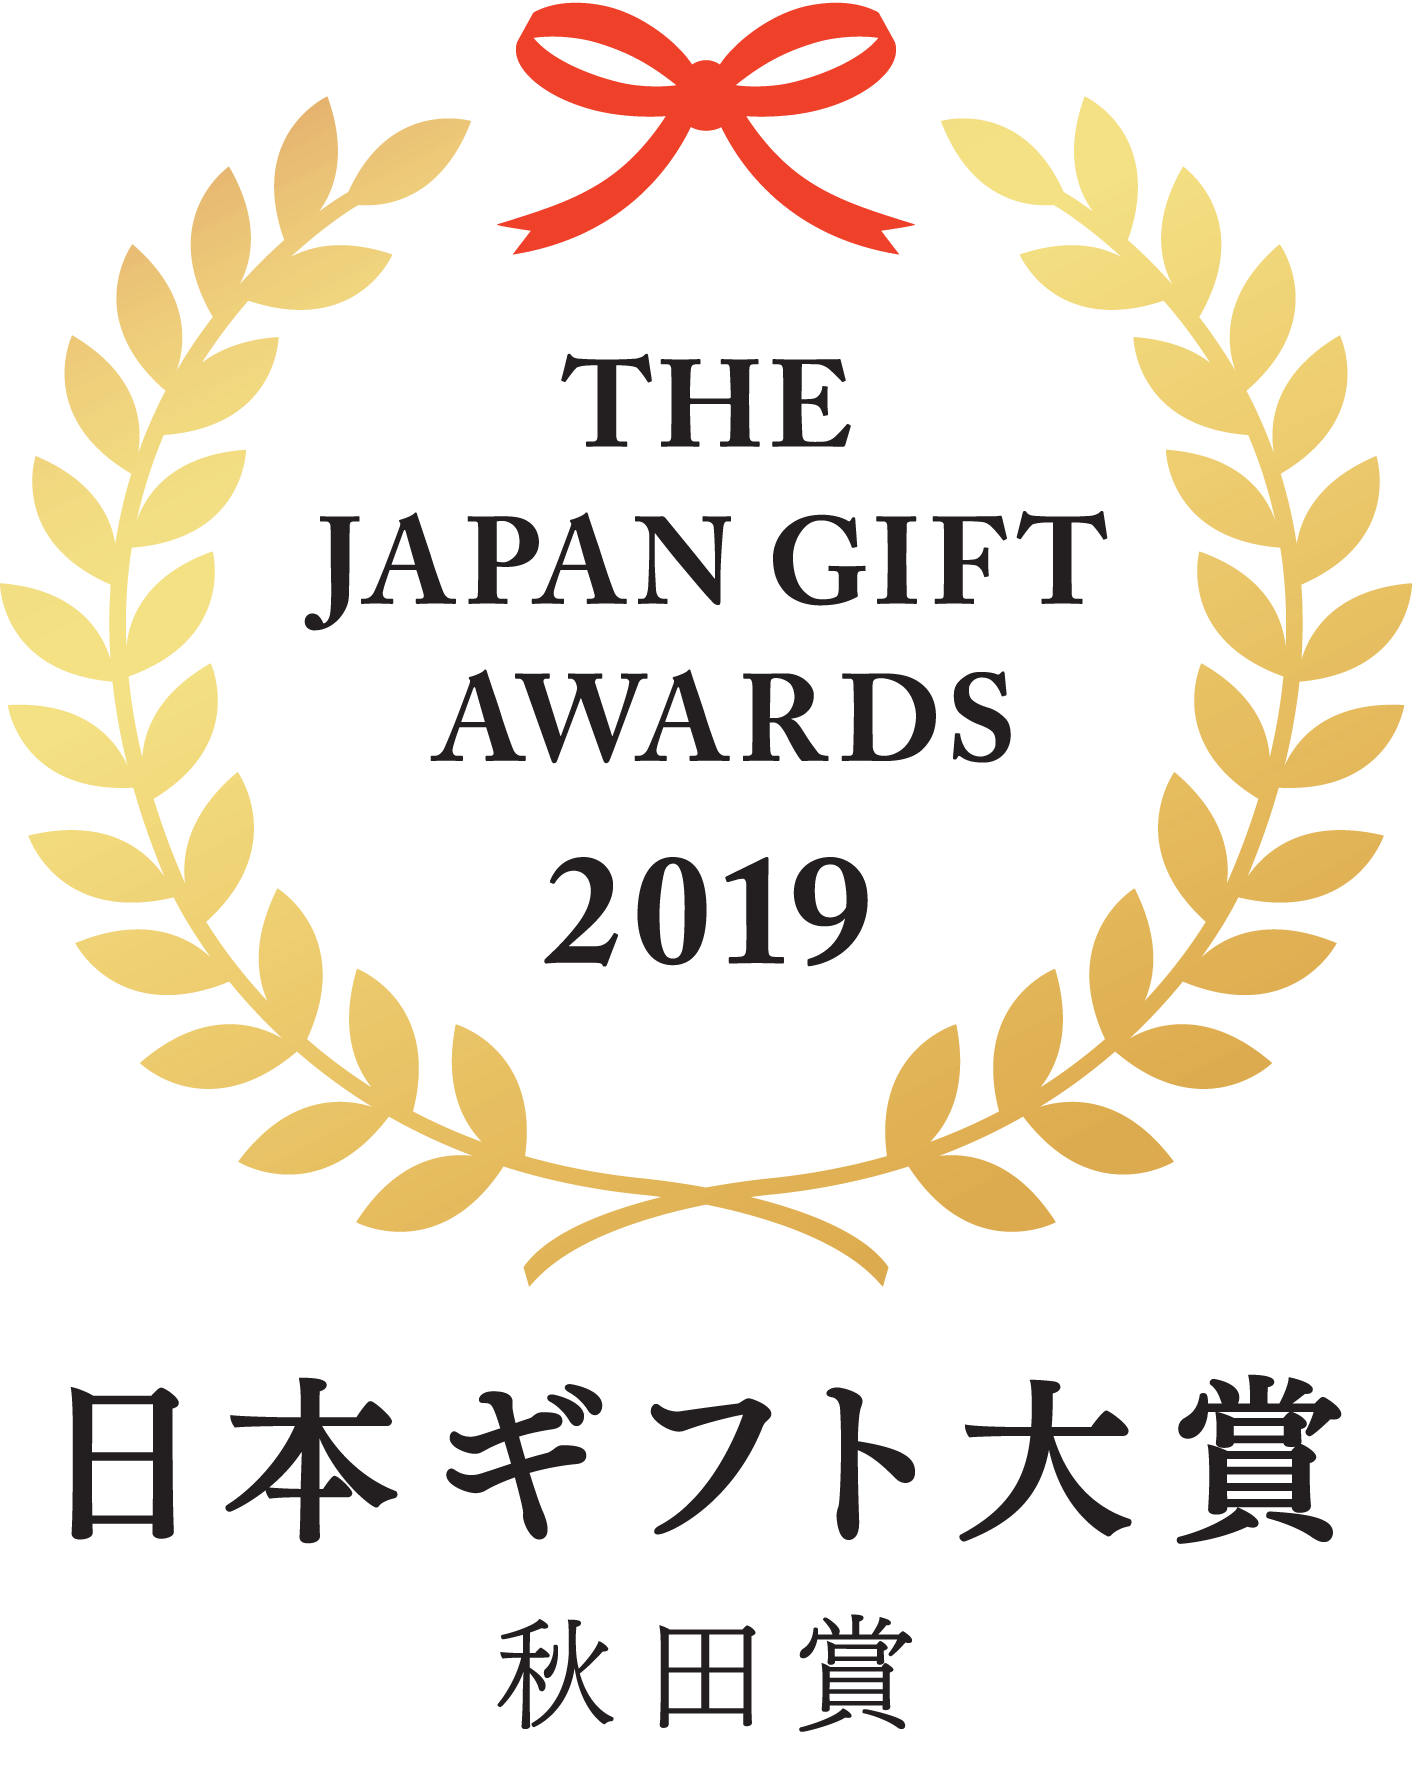 「秋田牛玄亭ハンバーグ」は、日本ギフト大賞2019秋田賞を受賞